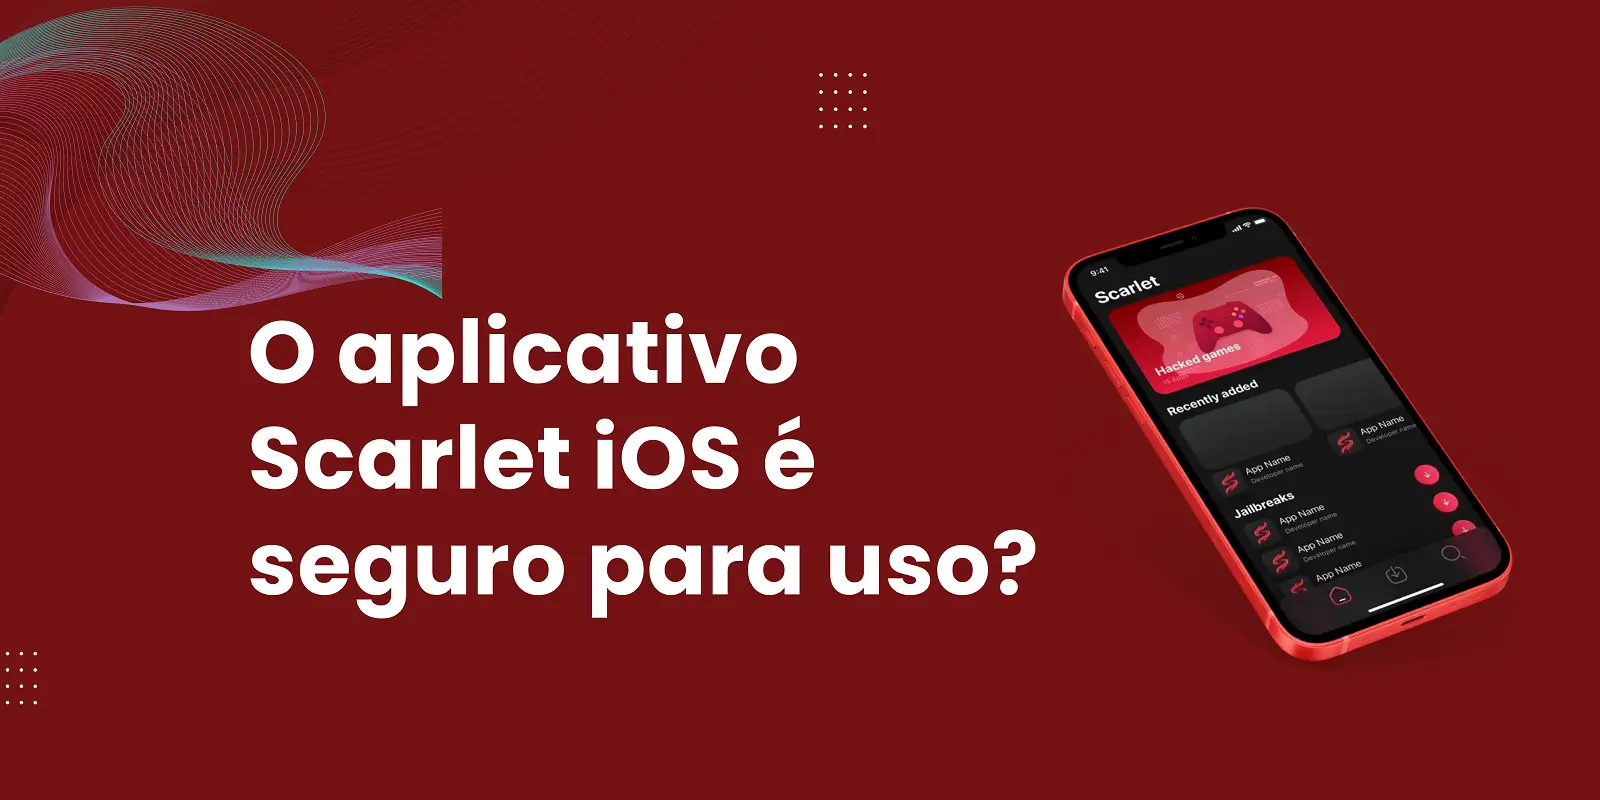 O aplicativo Scarlet iOS é seguro para uso?